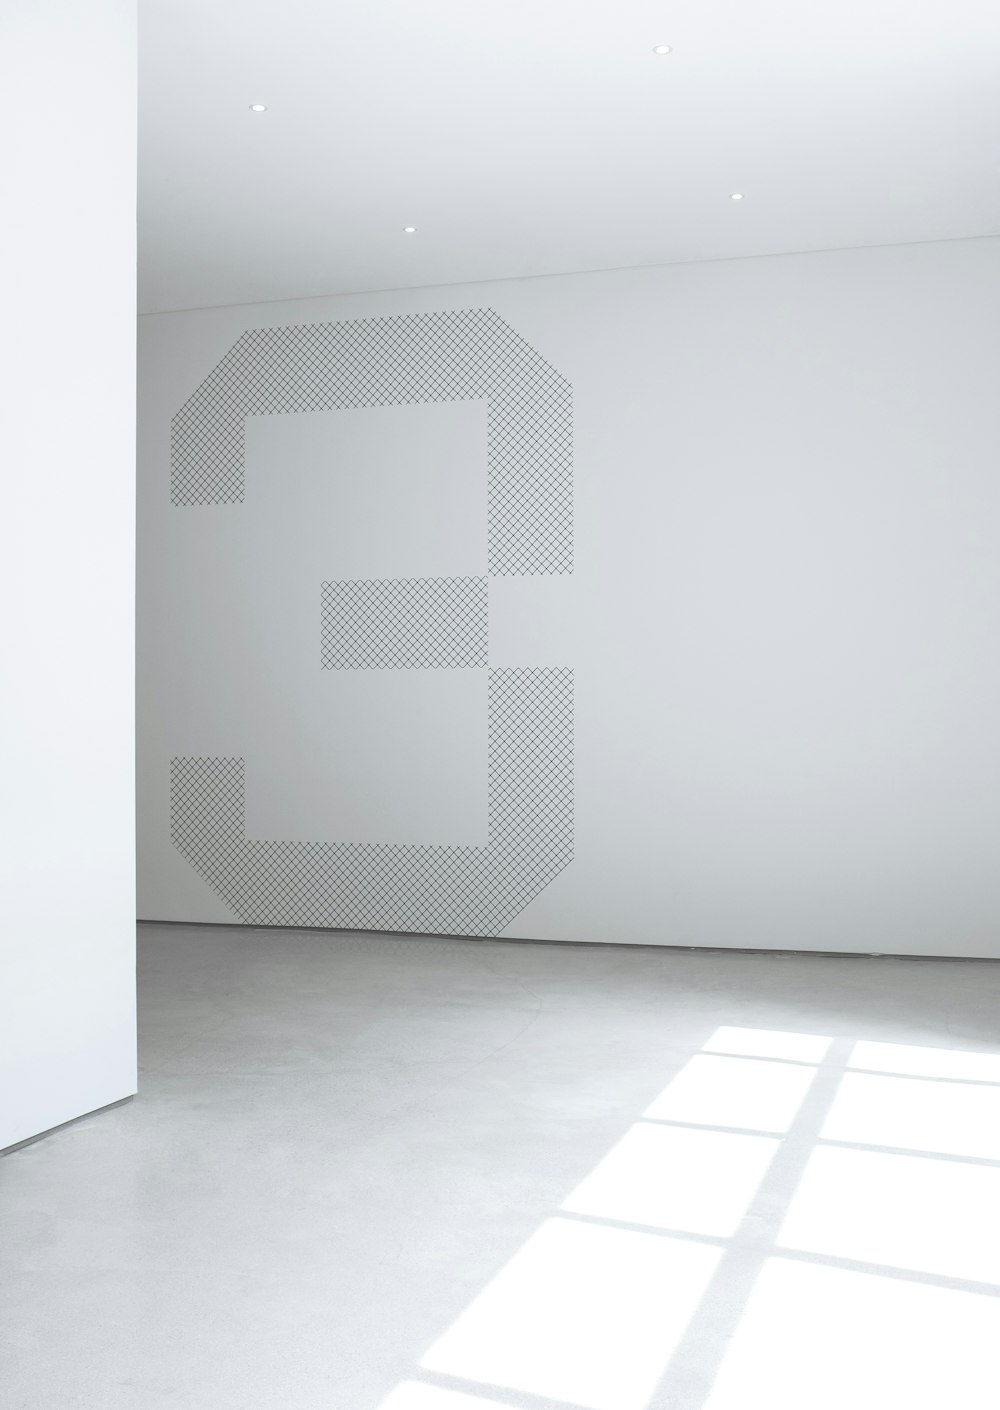 Foto der weißen Betonwand im Raum